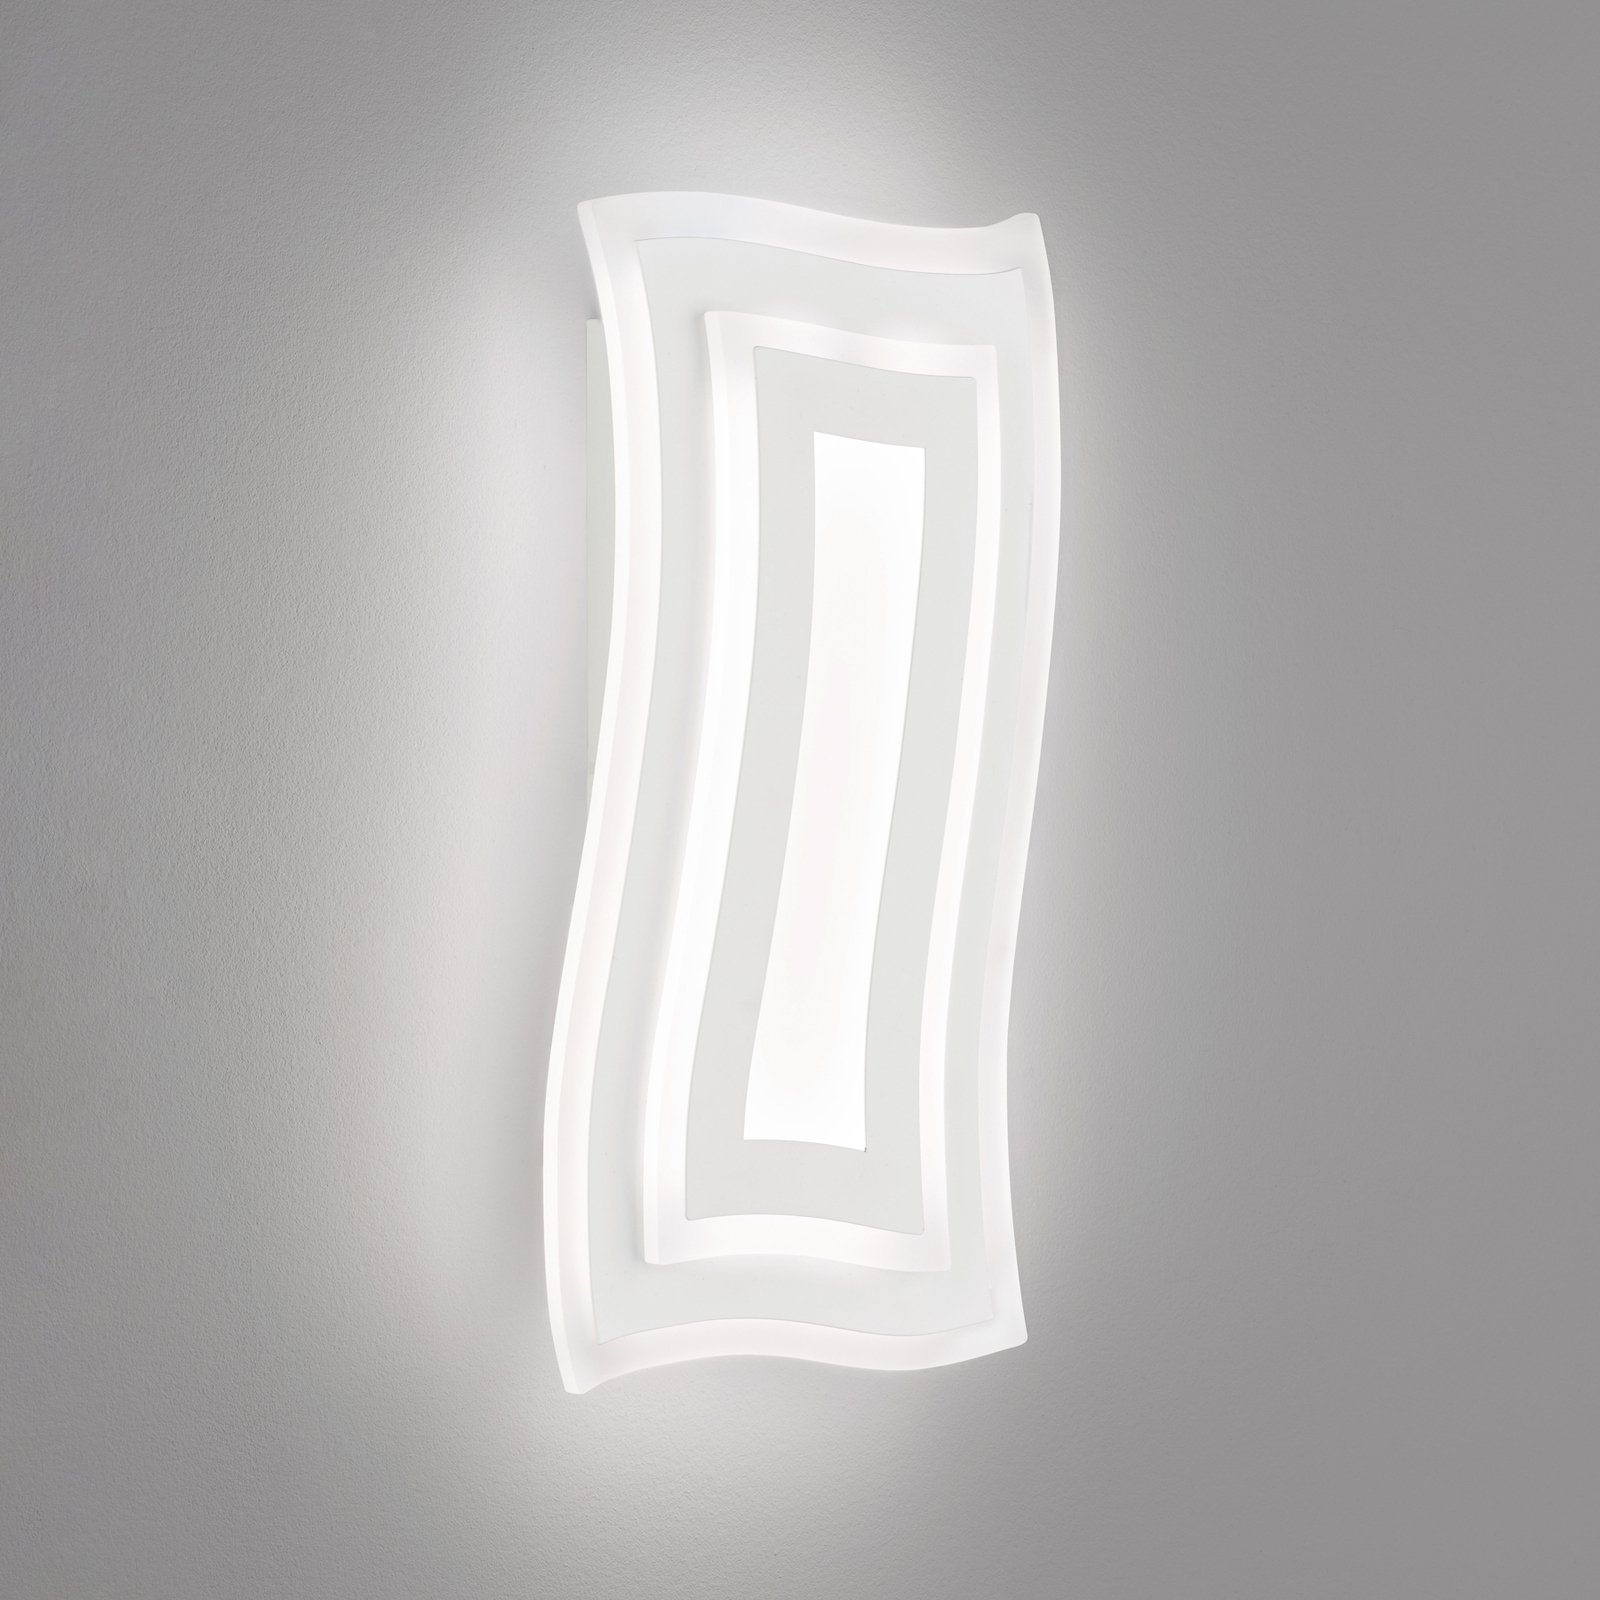 Nástěnné svítidlo Gorden LED, bílé, výška 43 cm, kov, CCT